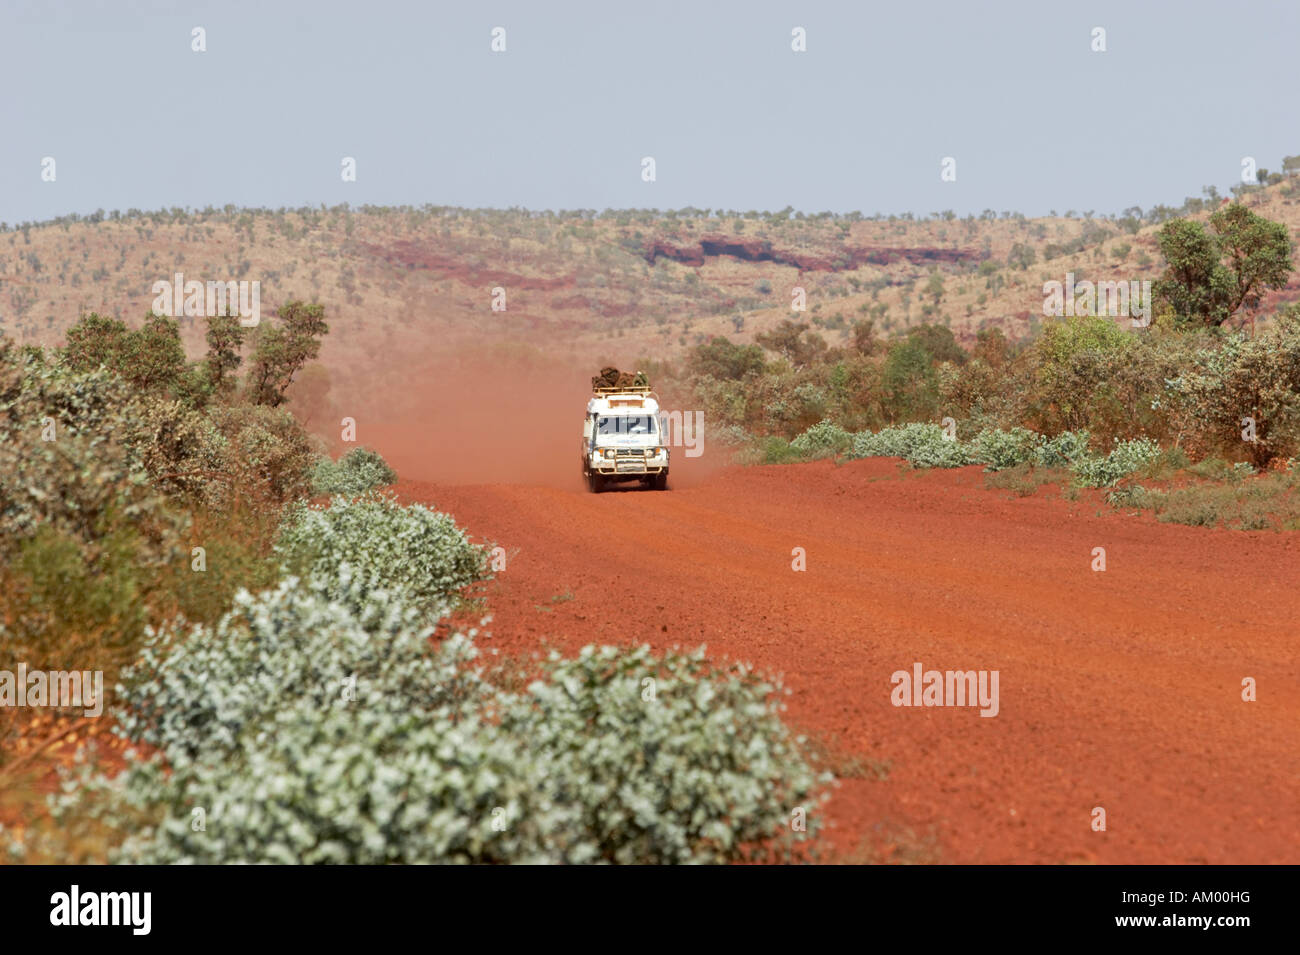 Toyota Landcruiser FJ 75 Arkana safari voiture roulant sur une route rouge dans la région de Pilbara Parc national de Karijini australie occidentale WA Banque D'Images